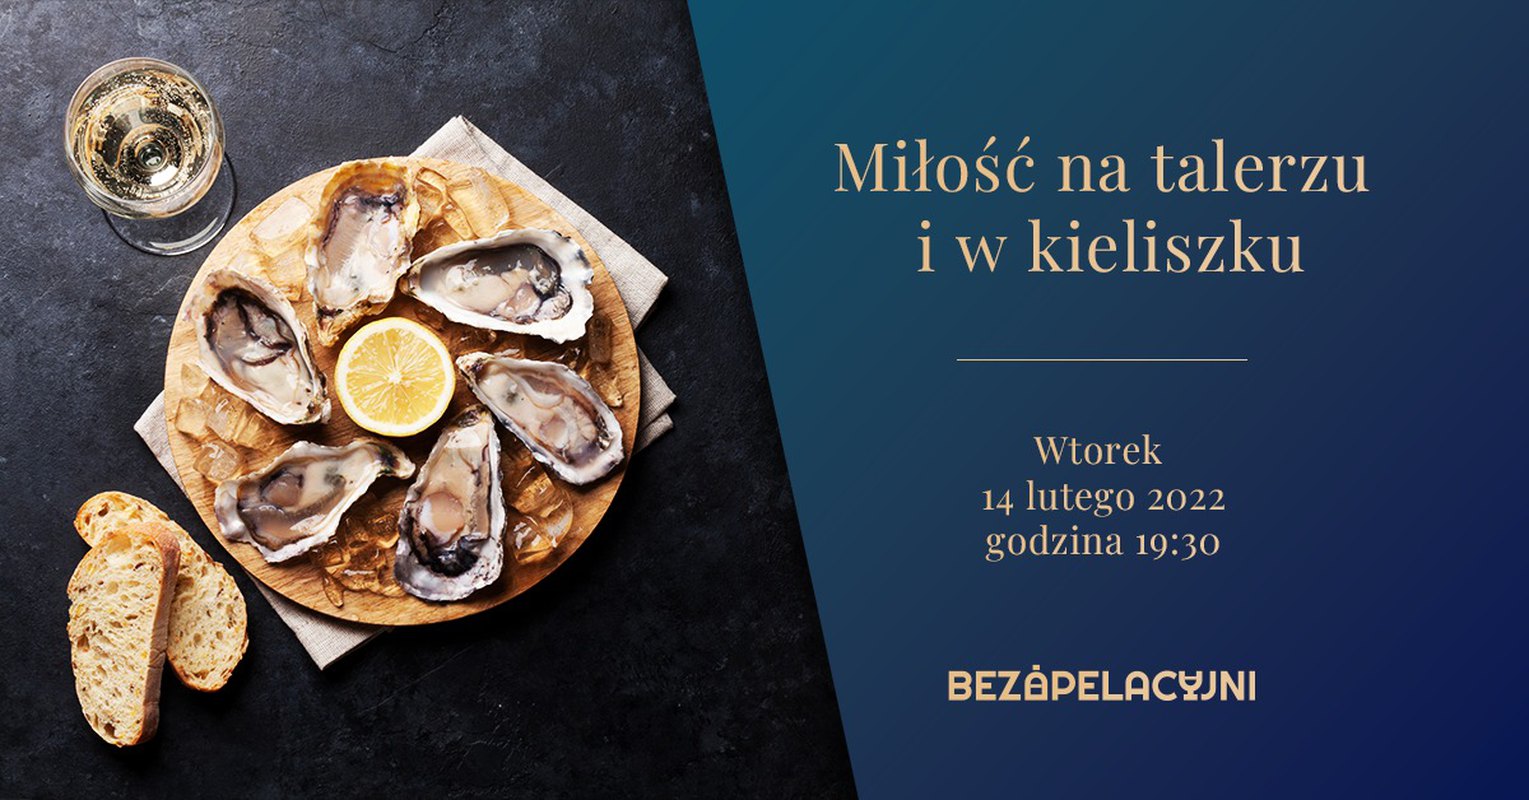 Miłość na talerzu i w kieliszku / Kolacja degustacyjna w Klubie Polskiego Wina